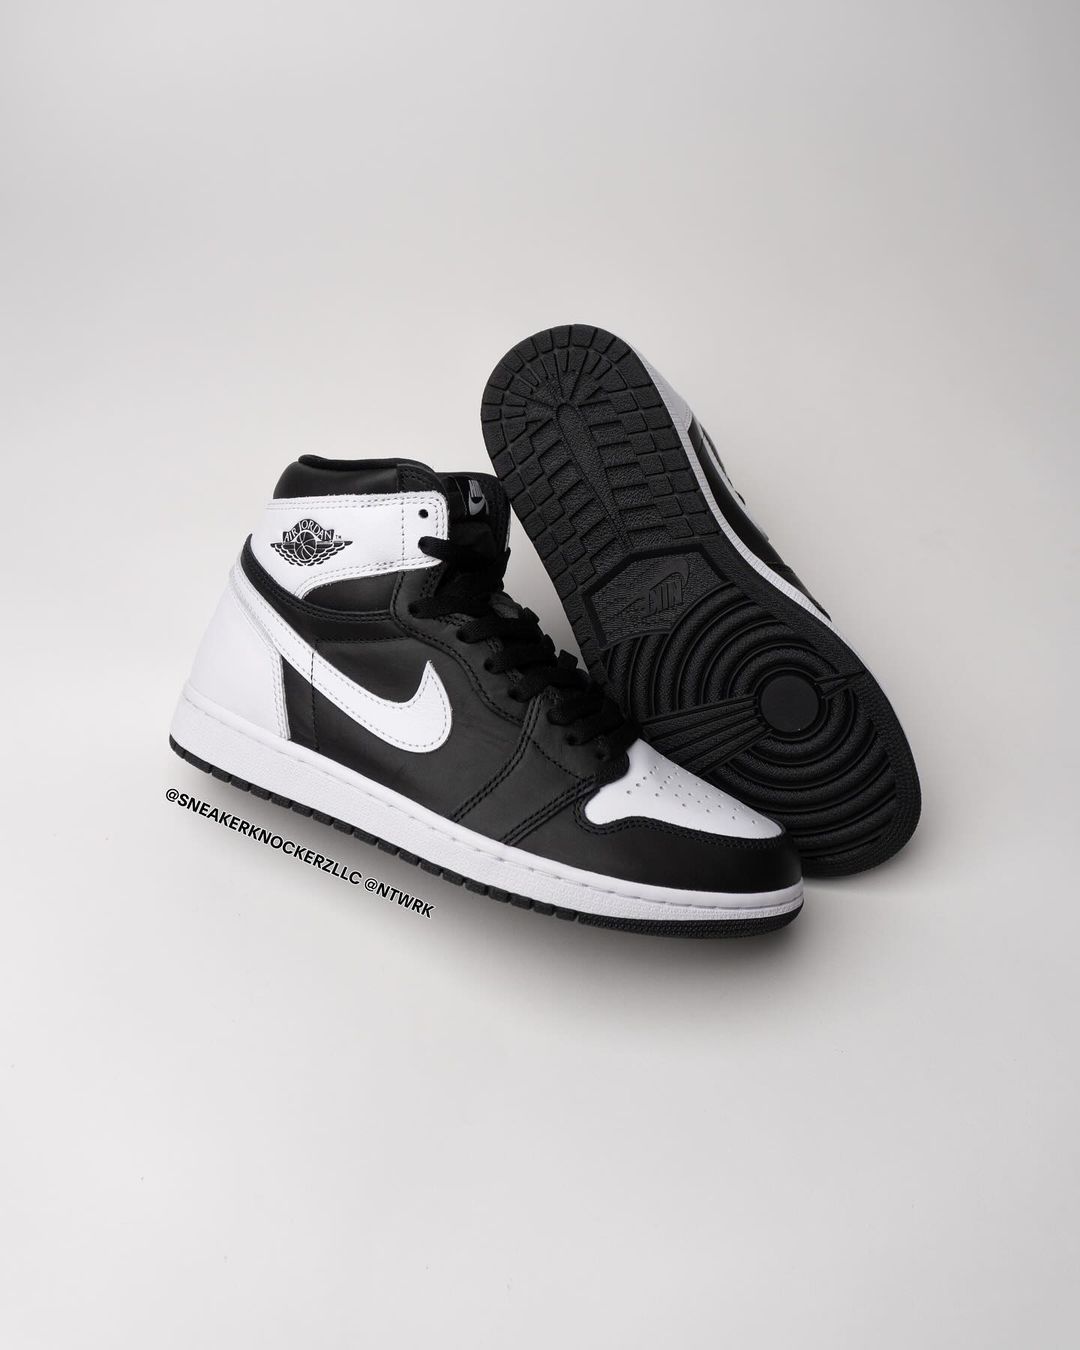 The Air Jordan 1 High OG Black/White